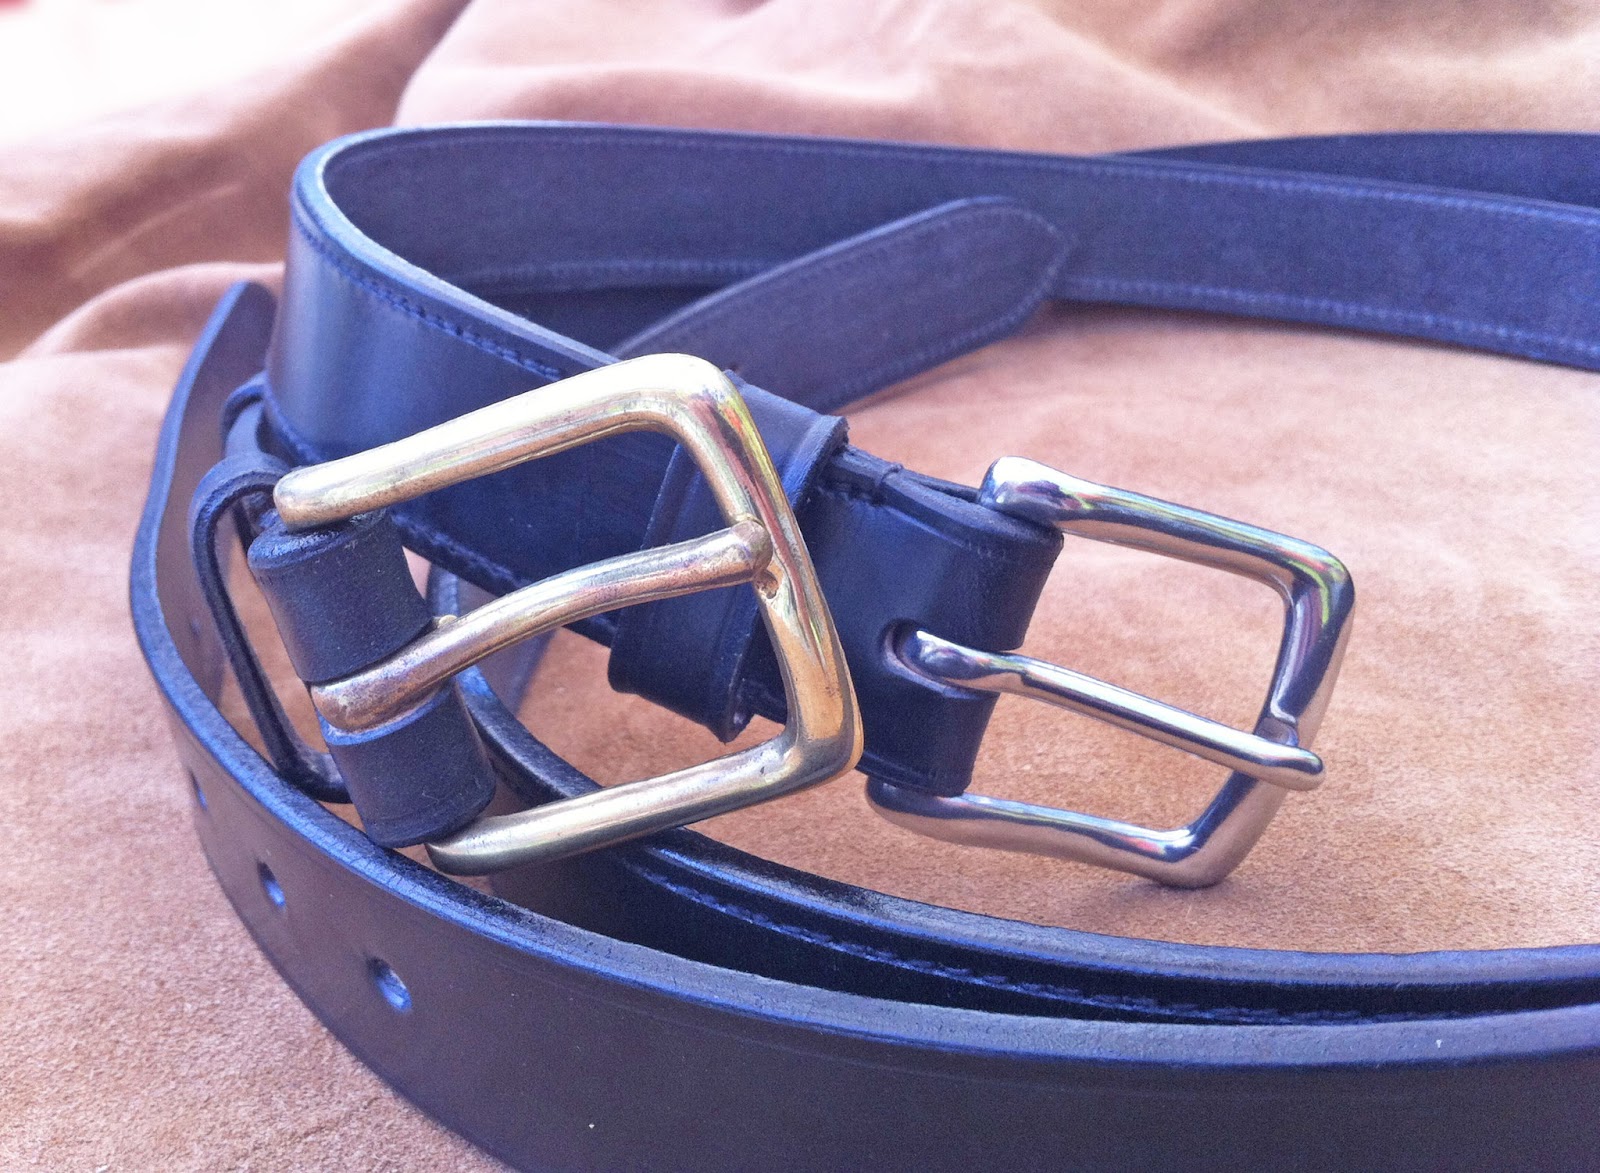 Leatherwork, repairs, saddles, bridles : Broomells Workshop: Leather ...